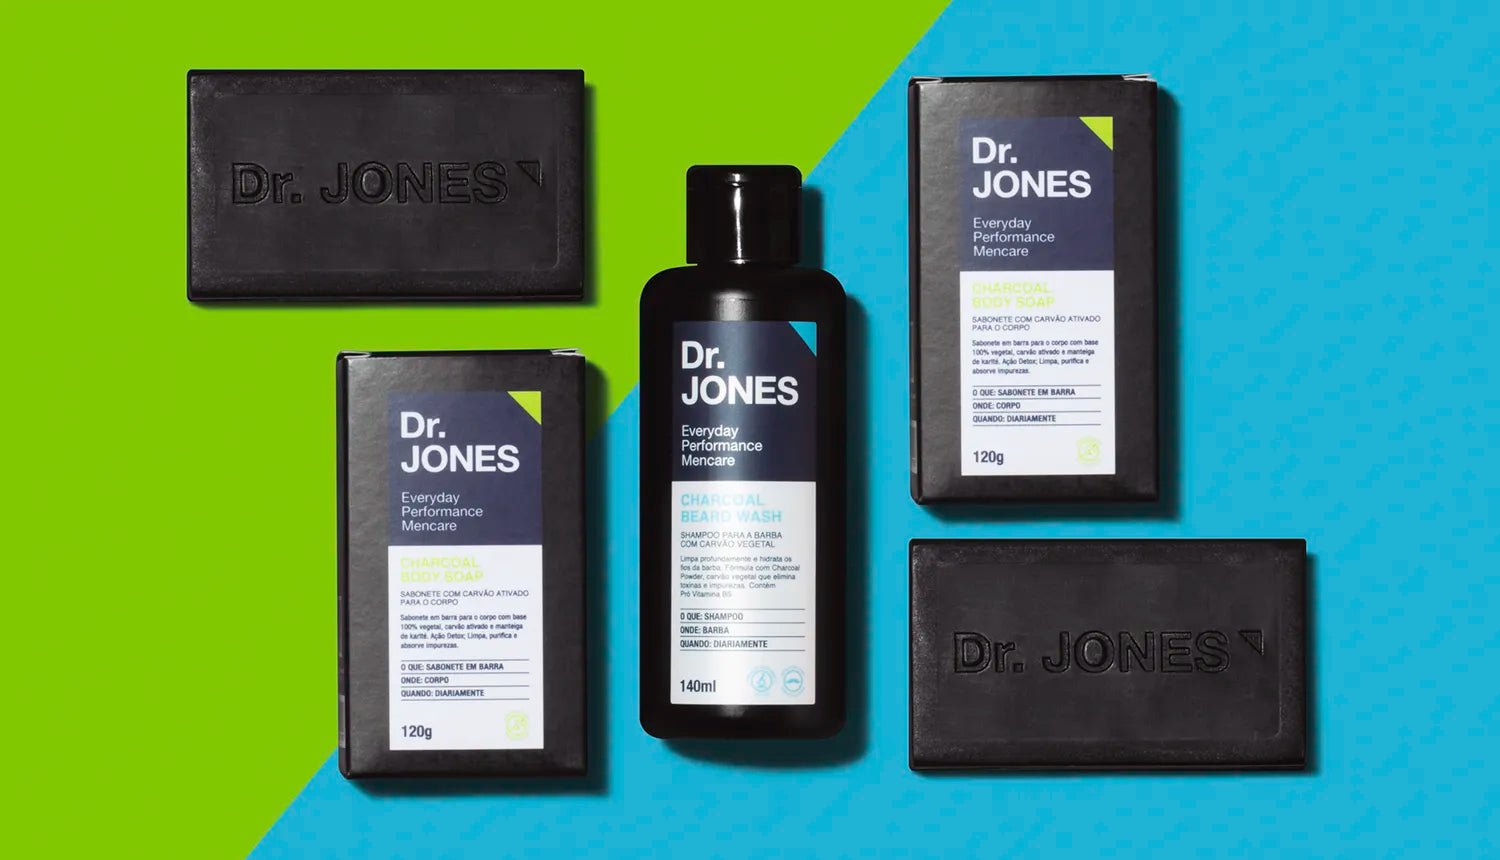 Por dentro do produto: Carvão Vegetal - Dr. JONES. Em fundo verde e azul, embalagens dos produtos Dr. JONES: Charcoal Beard Wash e Charcoal Body Soap, além dos sabonetes deste último.